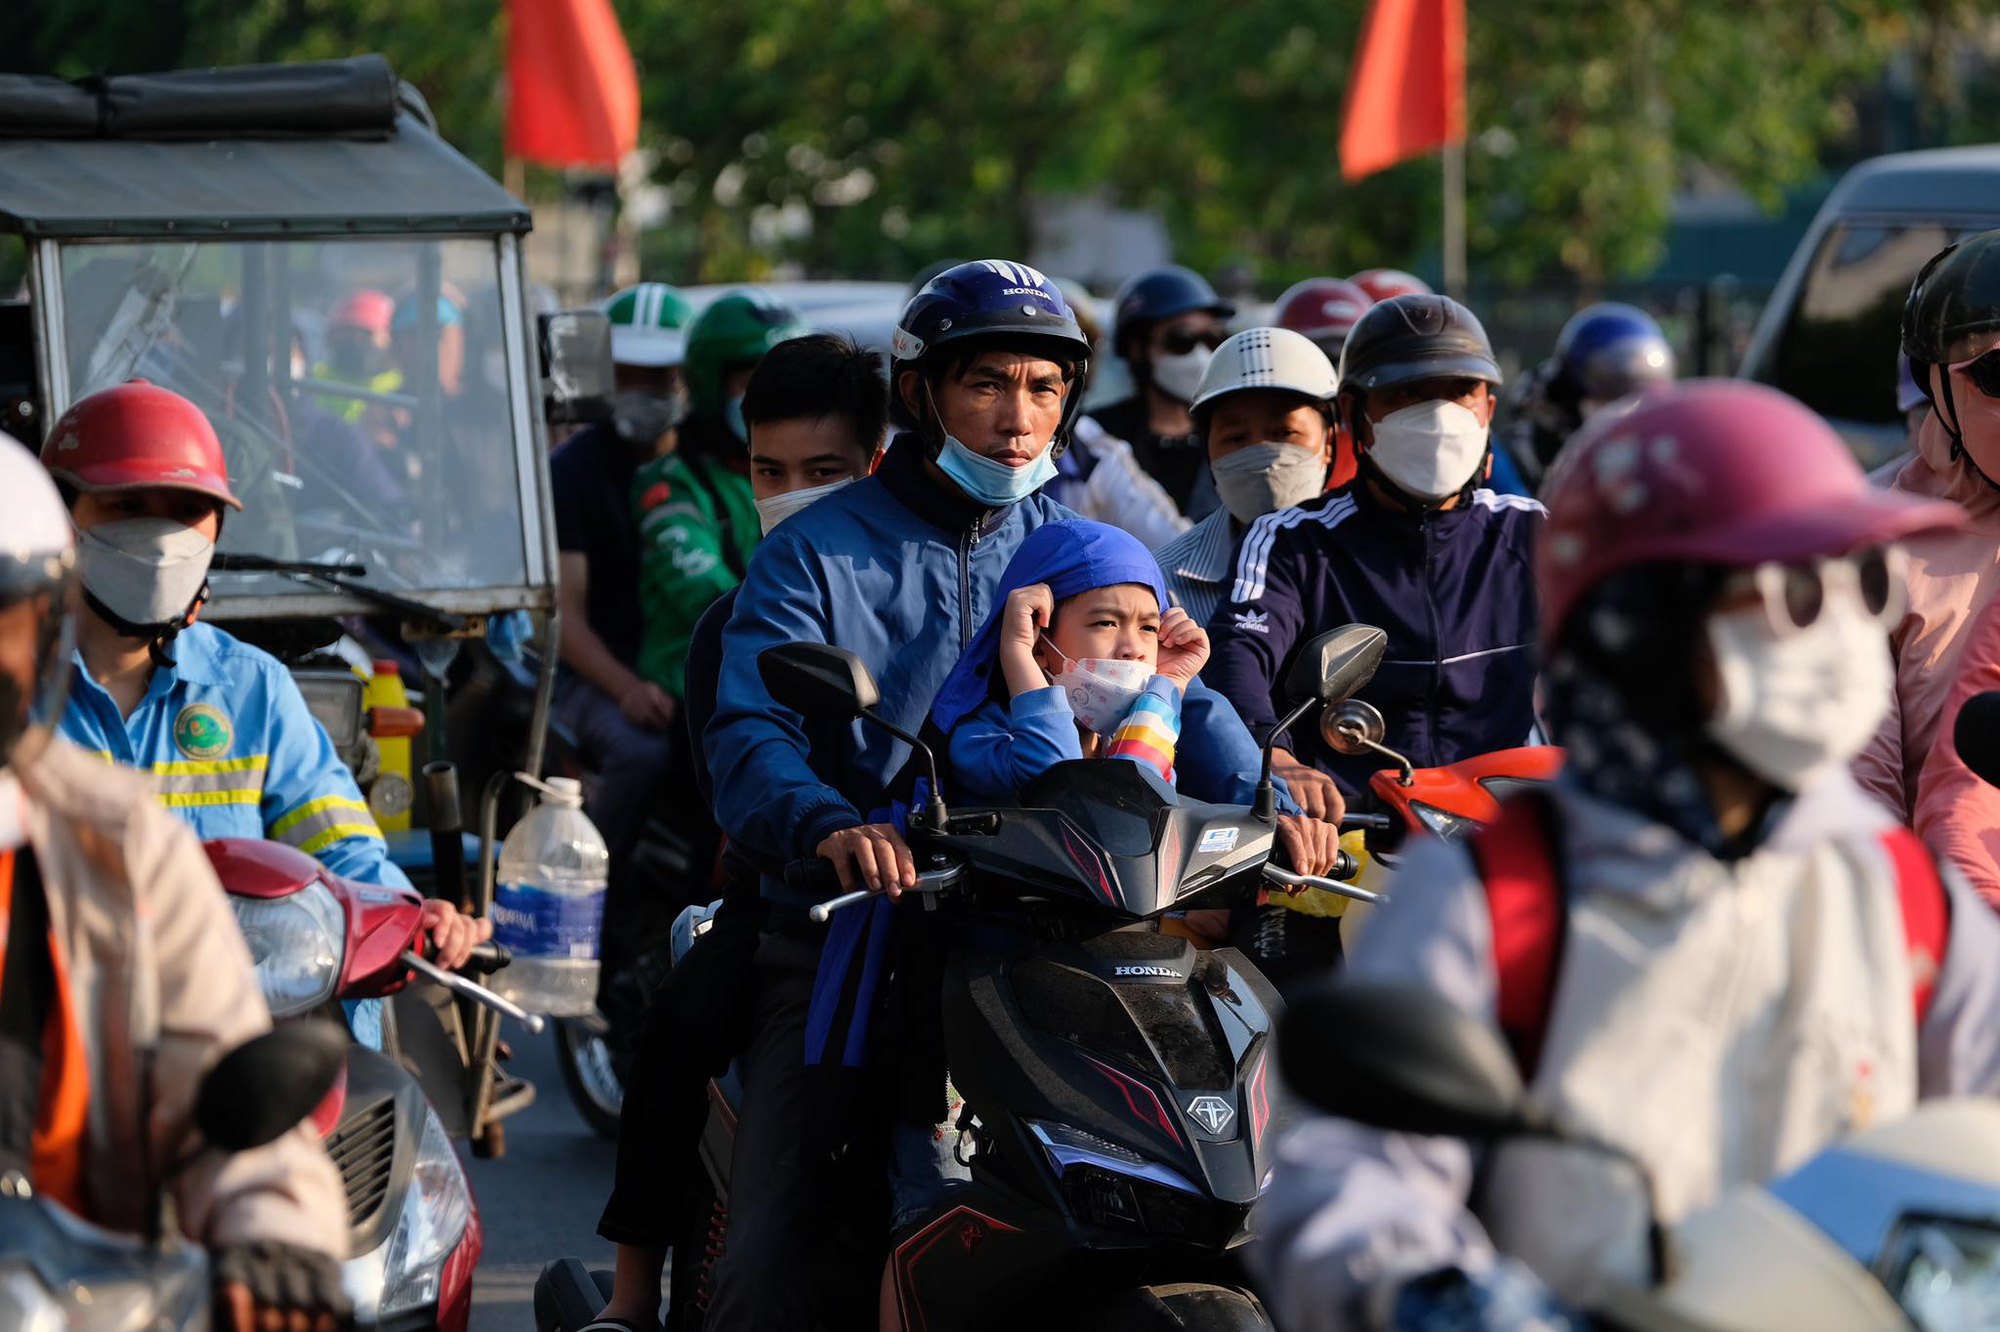 Người dân ùn ùn quay trở lại Hà Nội dù chưa kết thúc kỳ nghỉ lễ vì nỗi sợ tắc đường, giao thông khu vực cửa ngõ ùn ứ-12